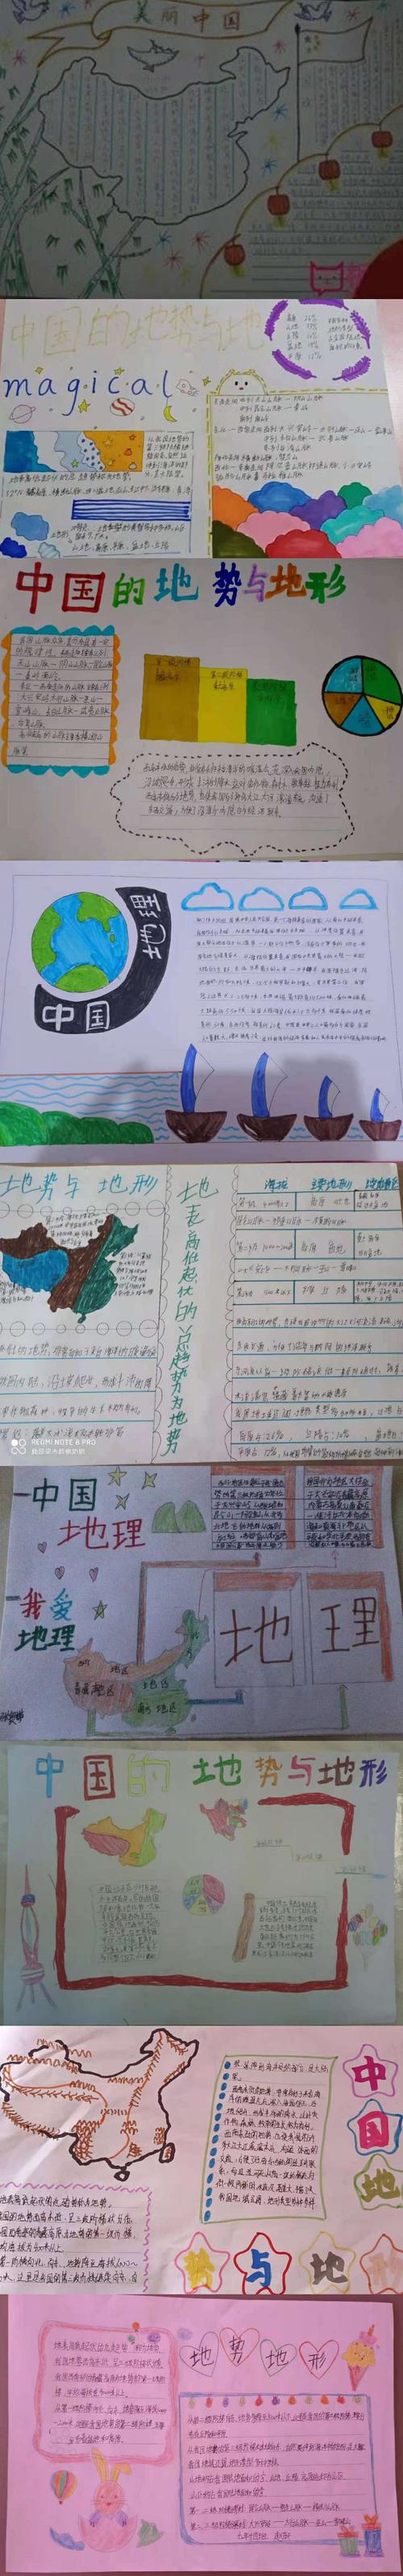 七年十四班地理手抄报主题第四期地势与地形 写美篇中国有四大高原